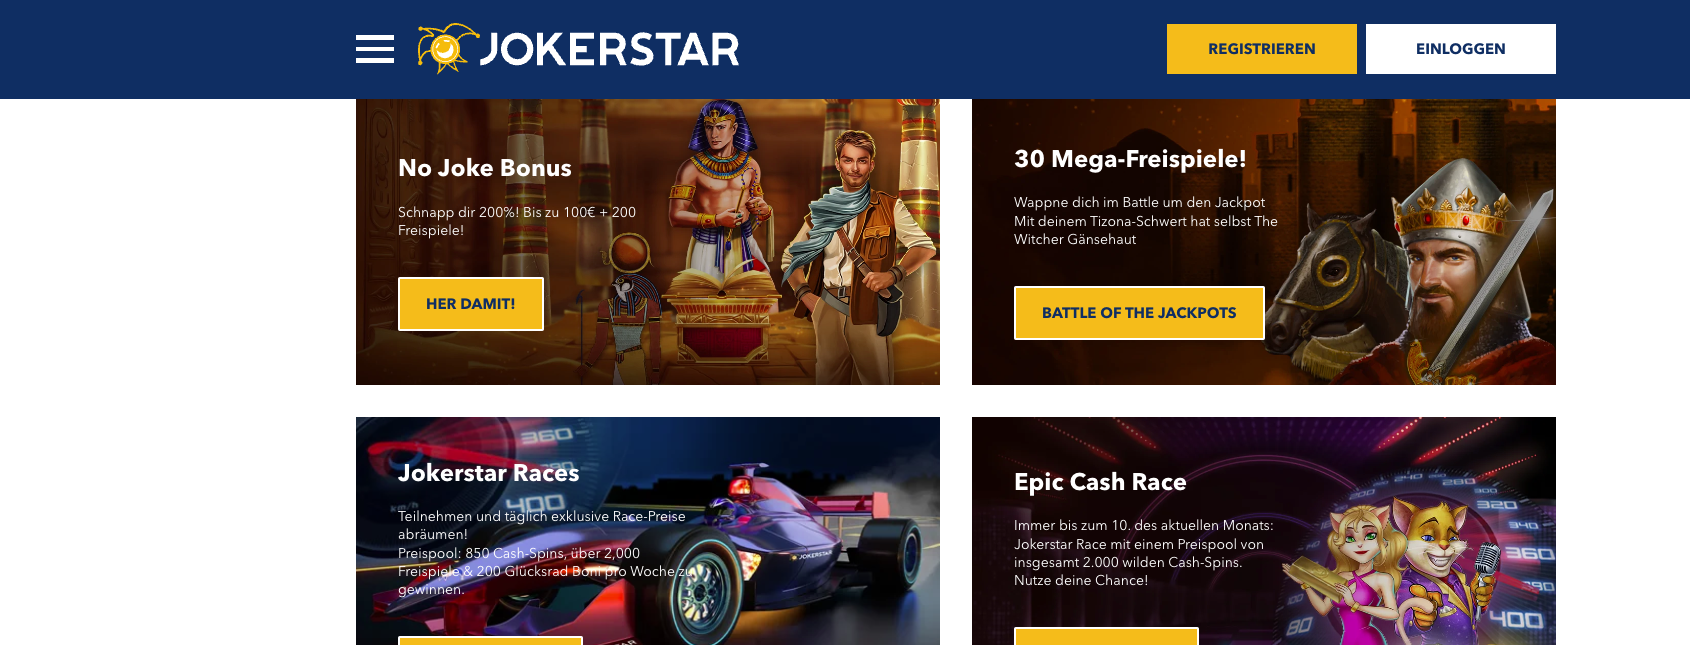 Jokerstar Casino Desktop Aktionen